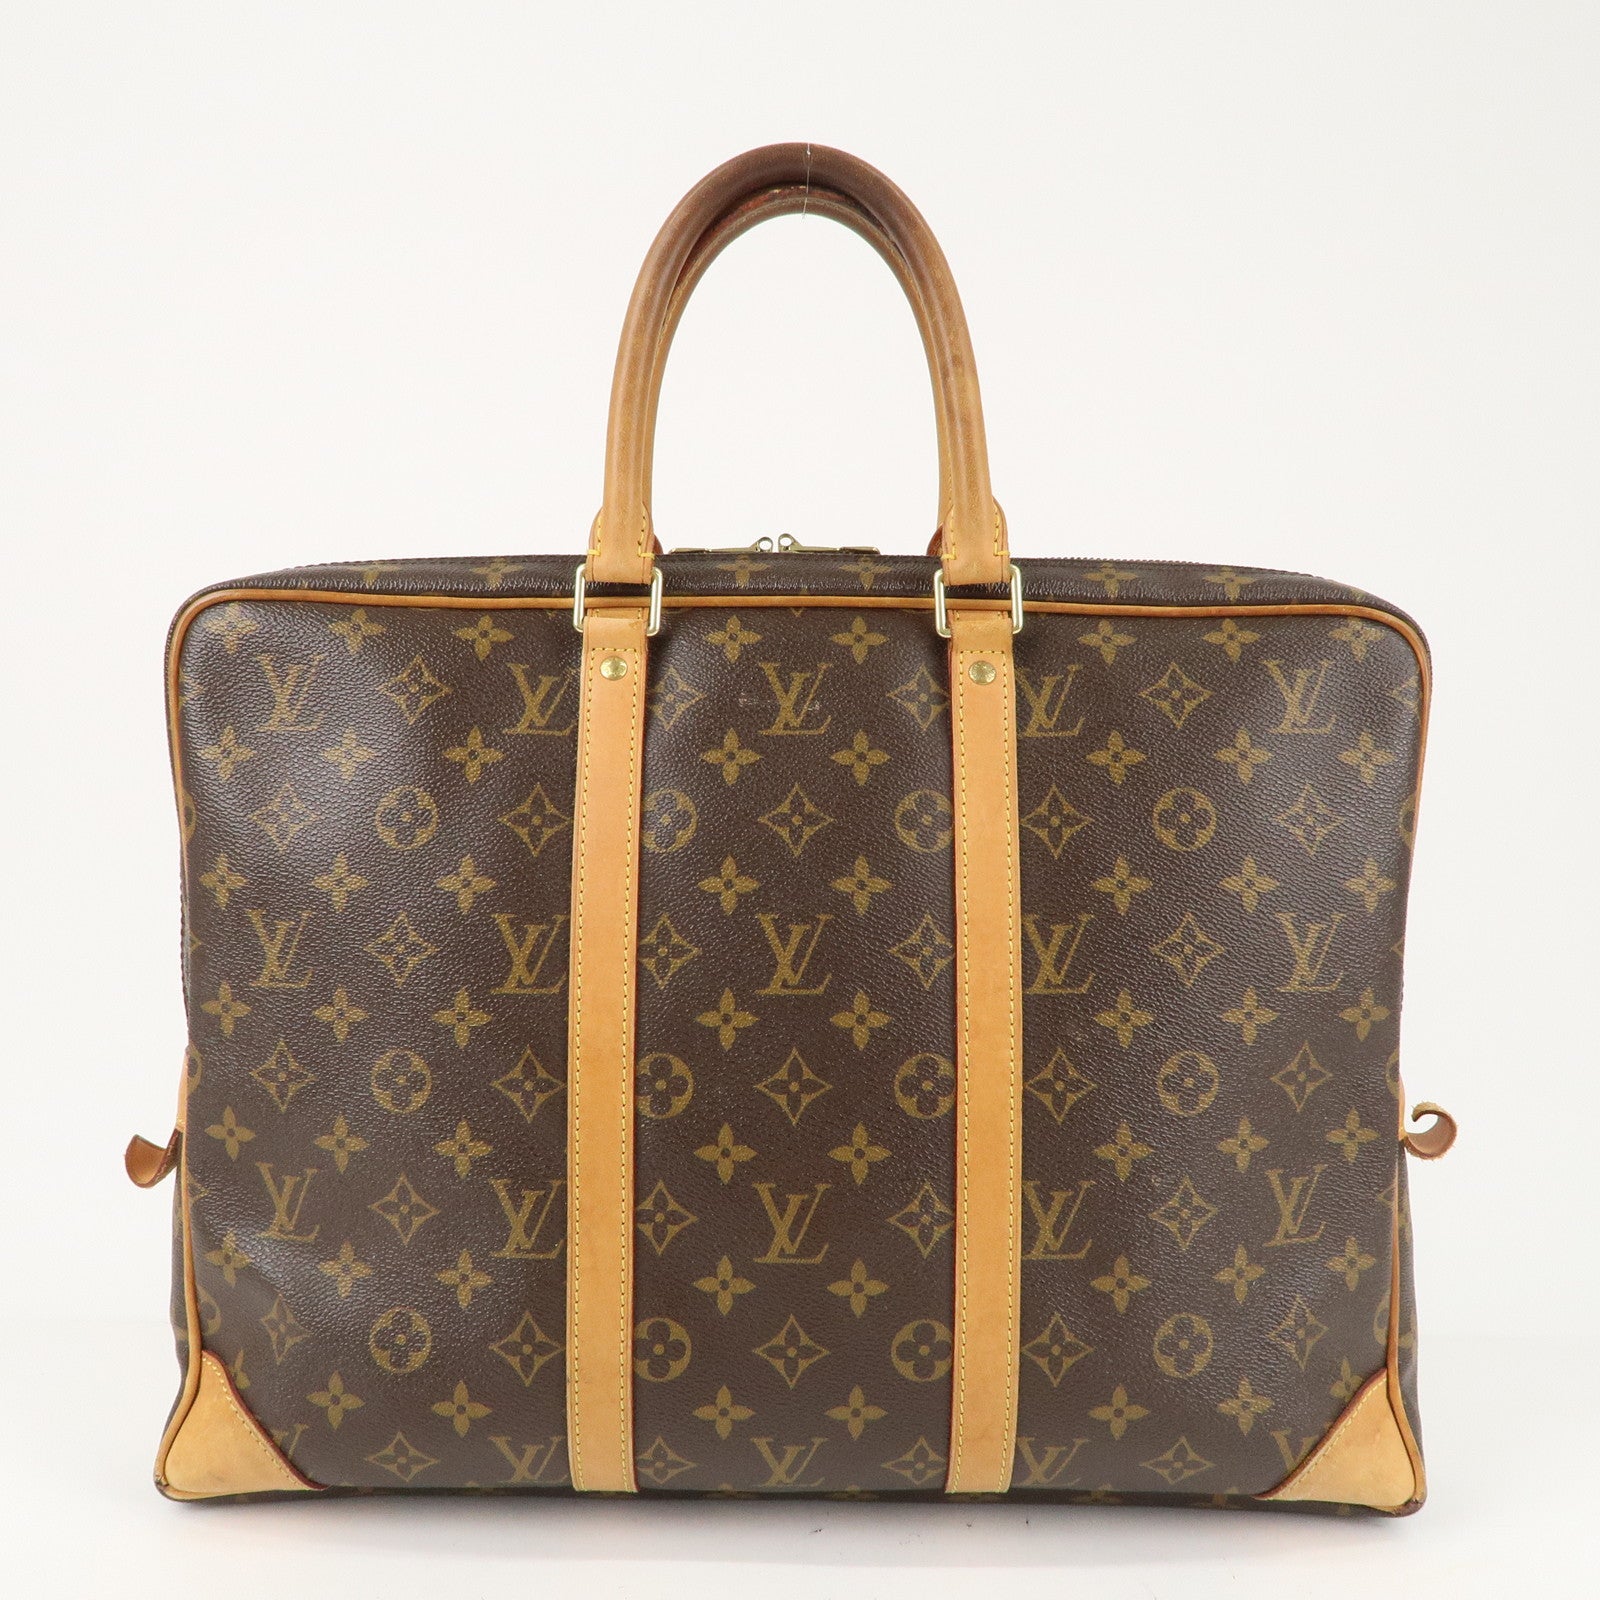 Louis Vuitton Porte Adresse Bracelet - Good or Bag